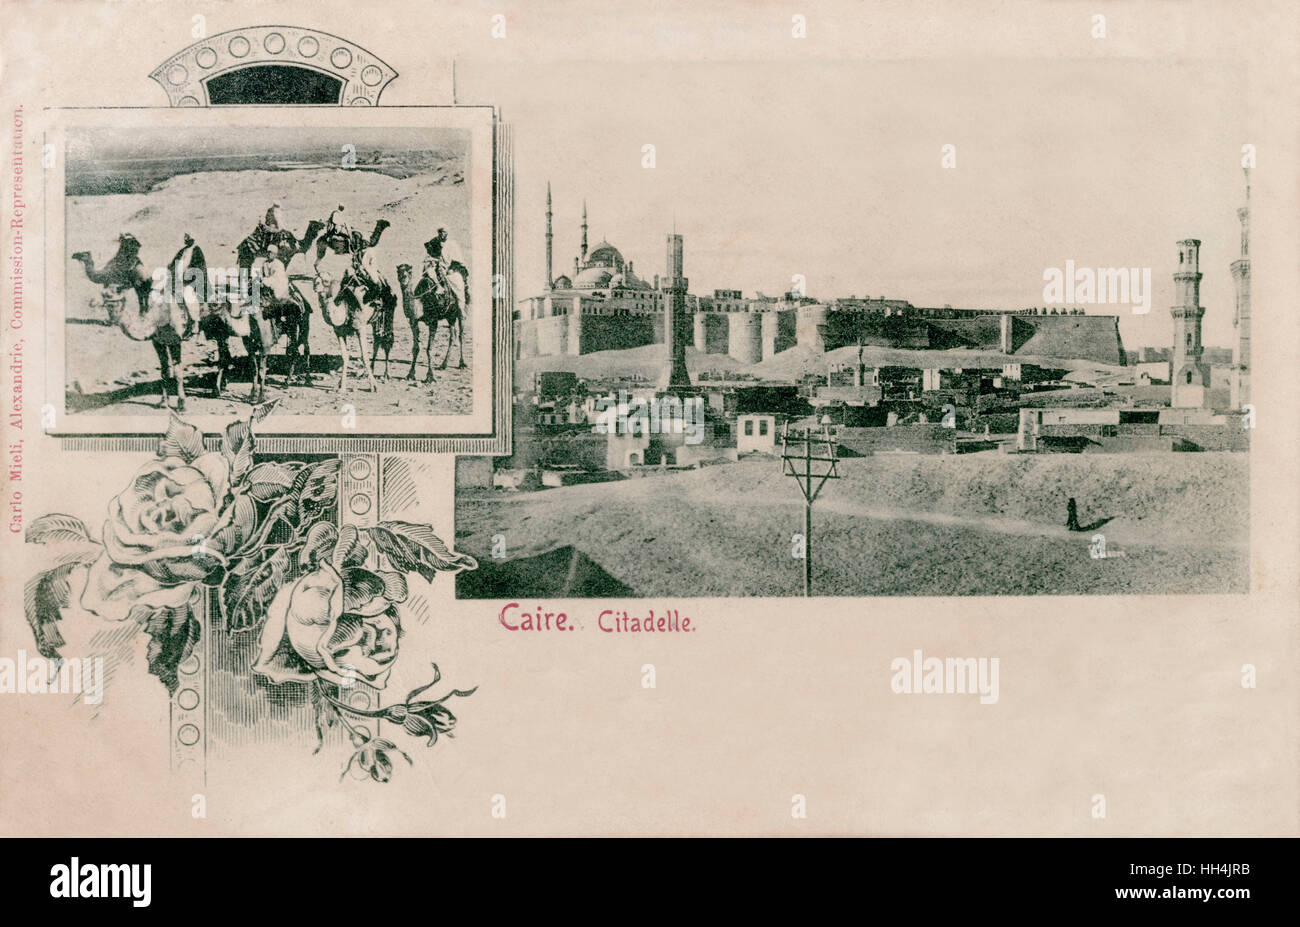 Zwei Bilder von einer Reisegruppe von Kamel Fahrern und der Saladin-Zitadelle von Kairo auf einer Postkarte mit gezeichneten Rosen verziert. Stockfoto